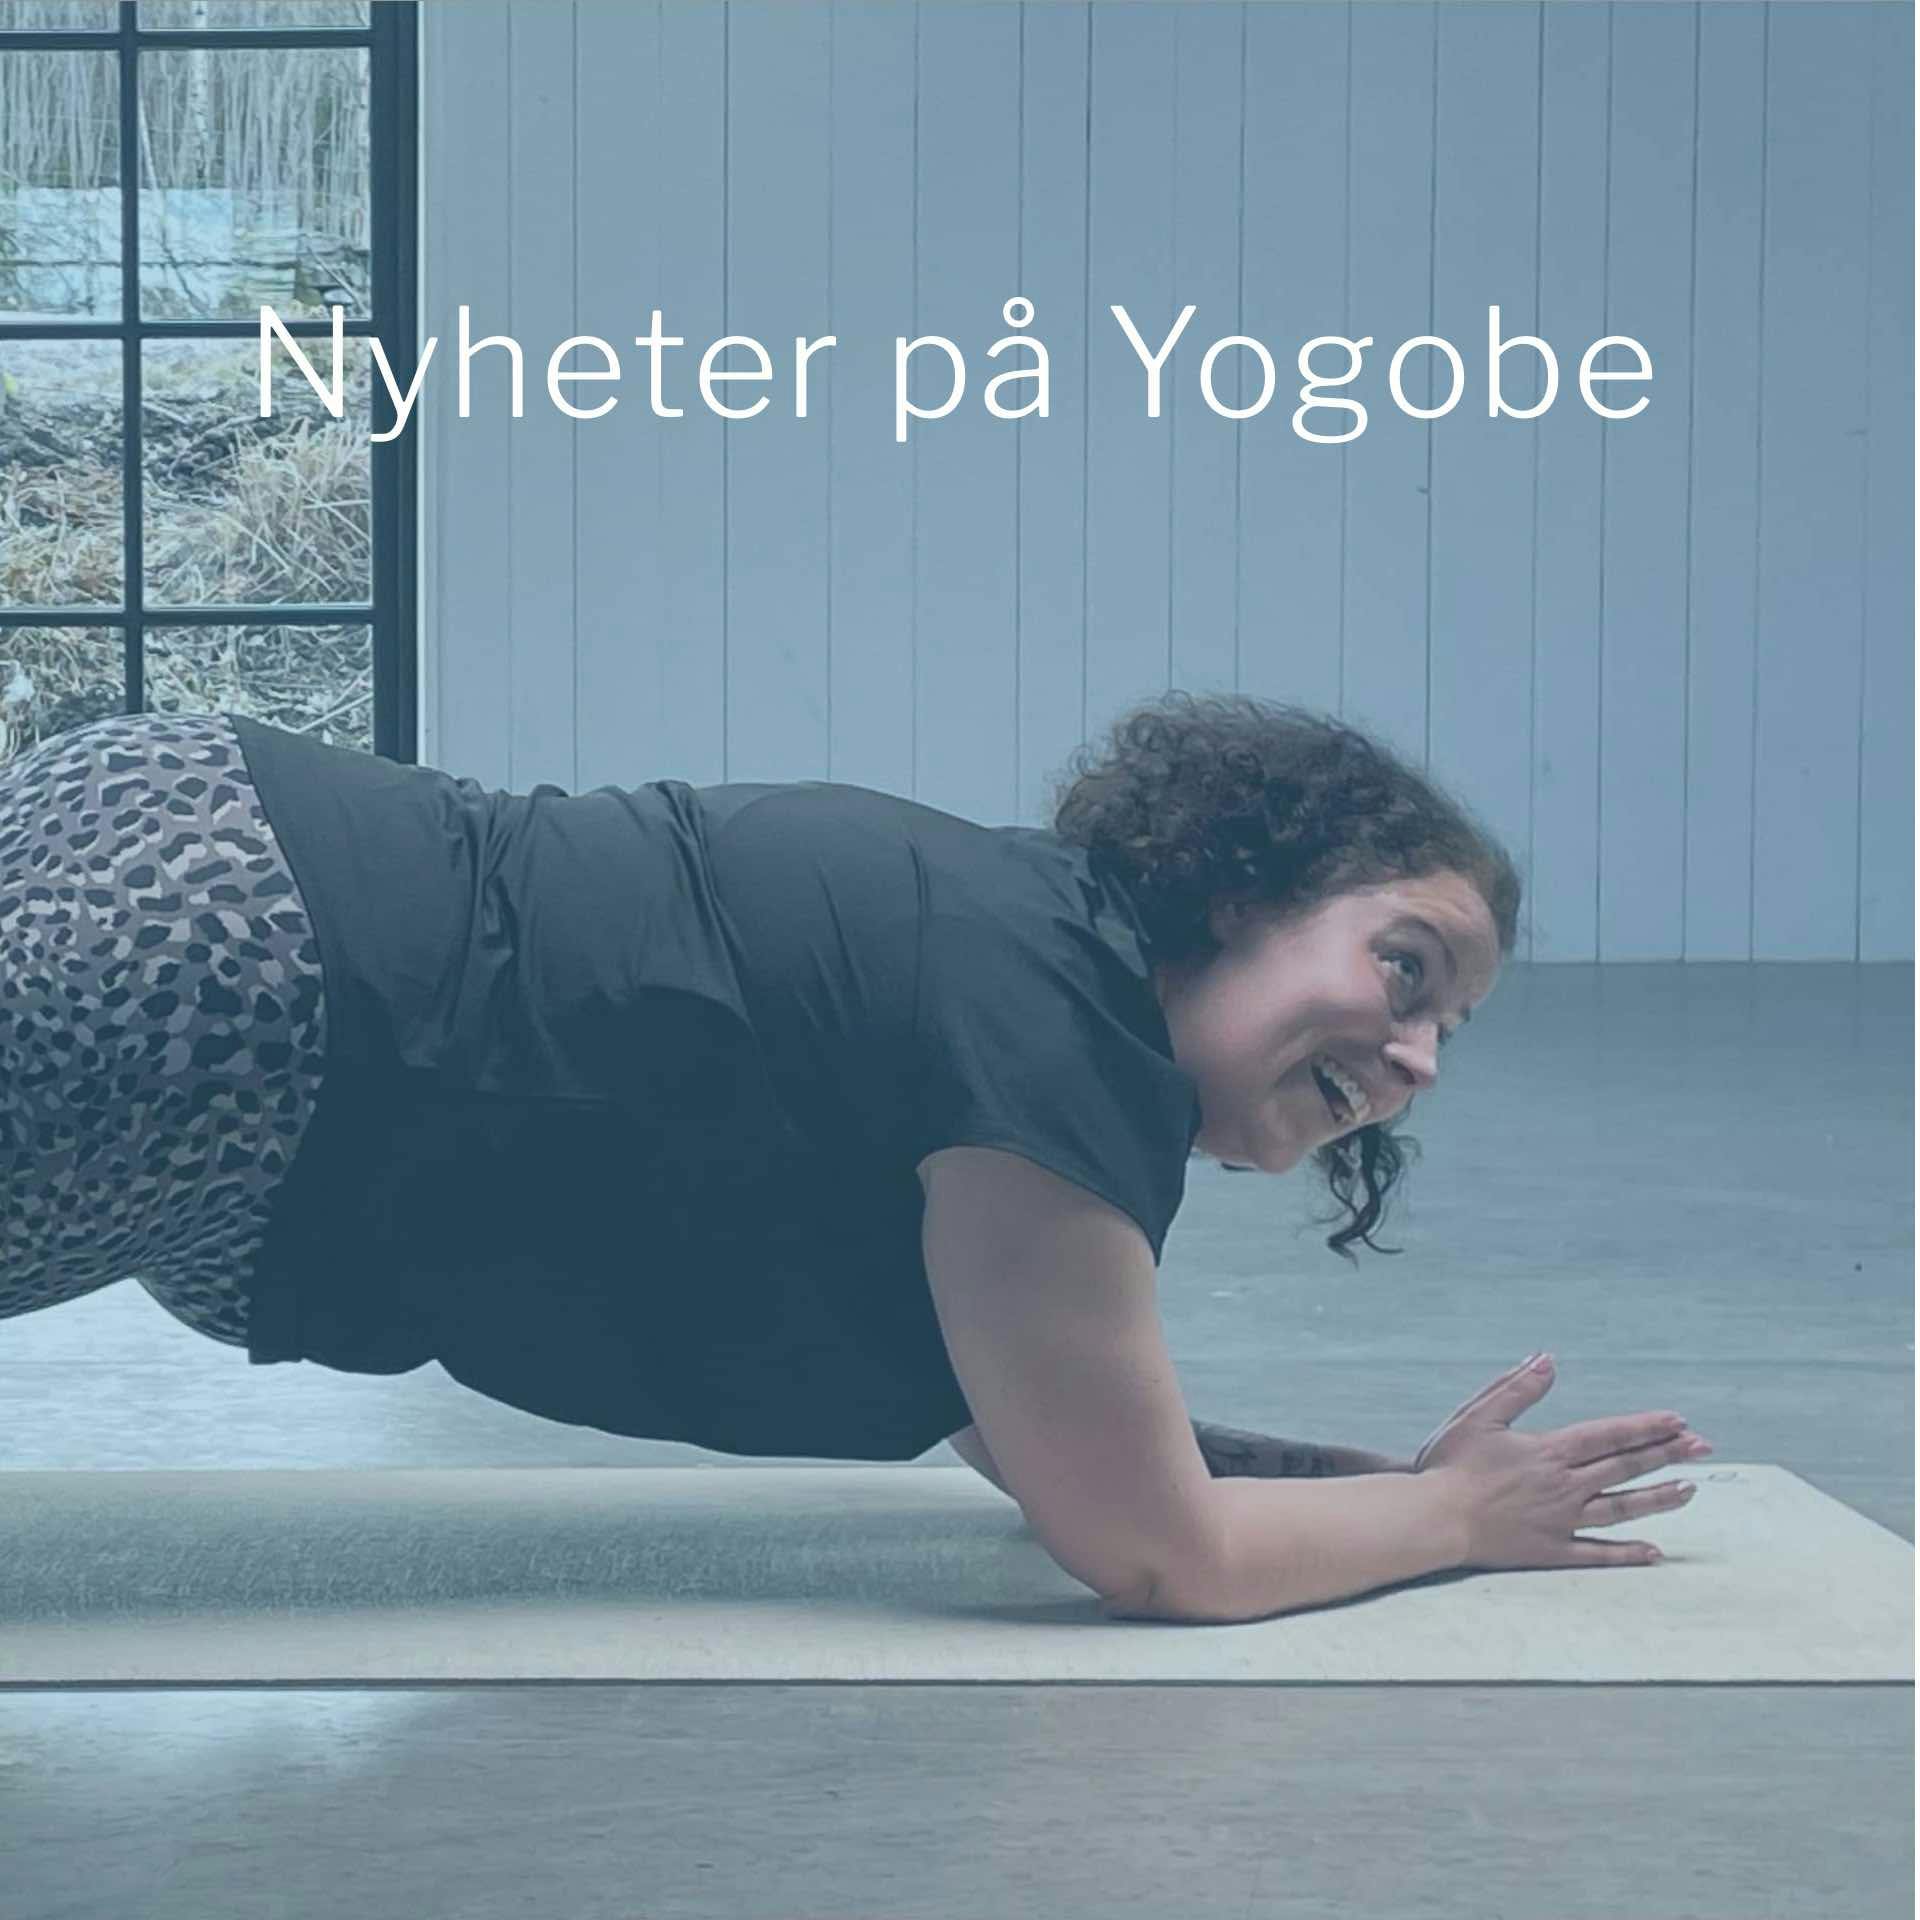 Ta en titt på våre siste nyheter om Yogobe innen online yoga, trening, meditasjon og pust.